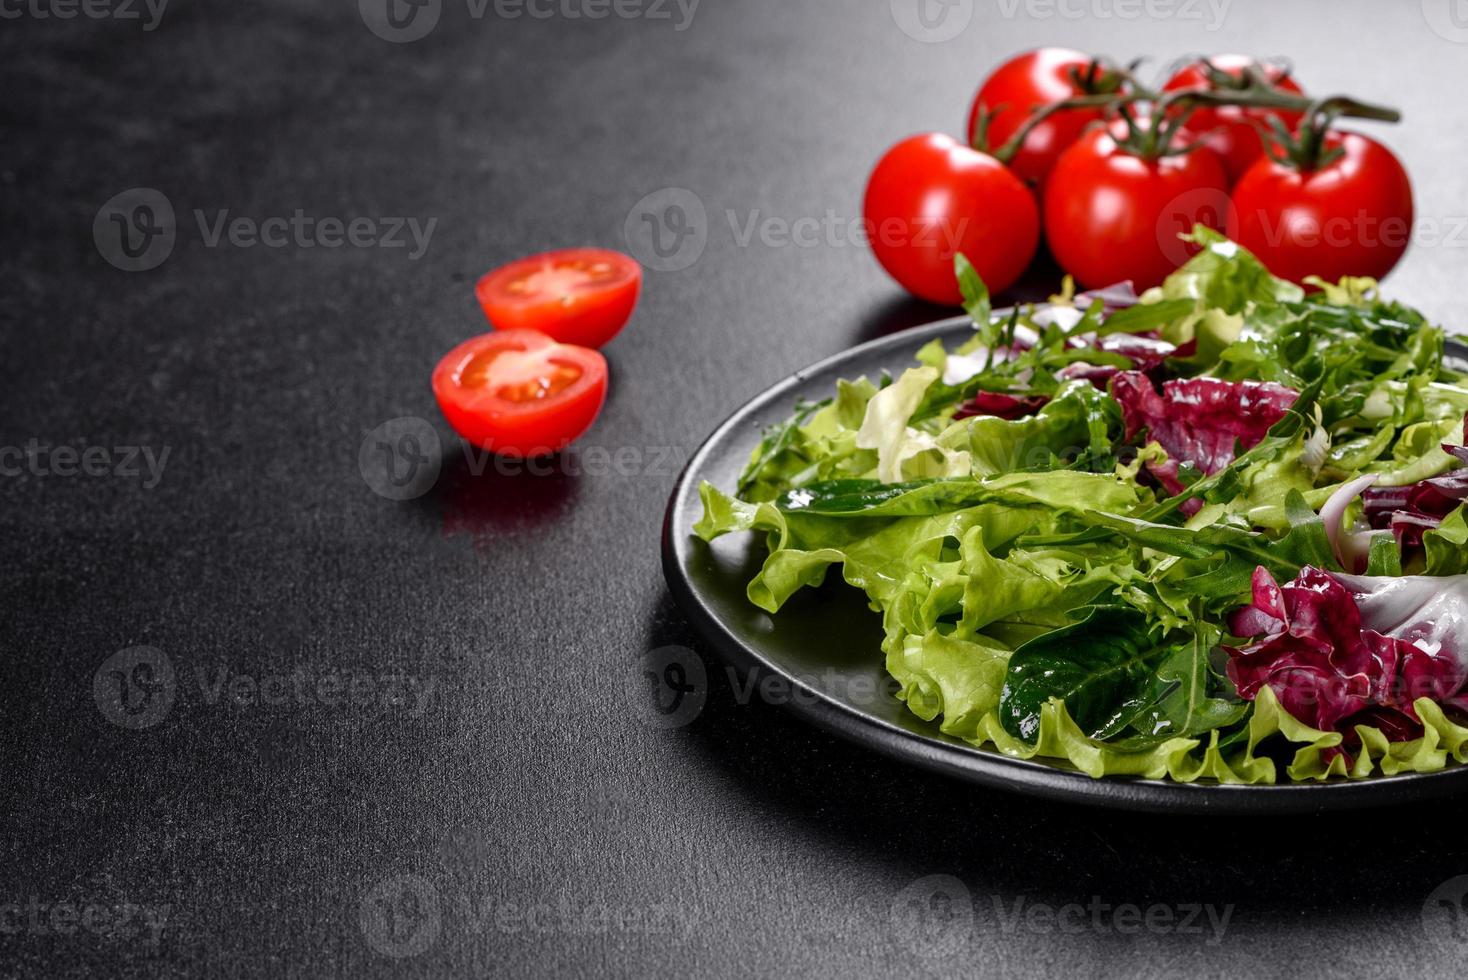 délicieuse salade végétarienne fraîche de légumes hachés sur une assiette photo